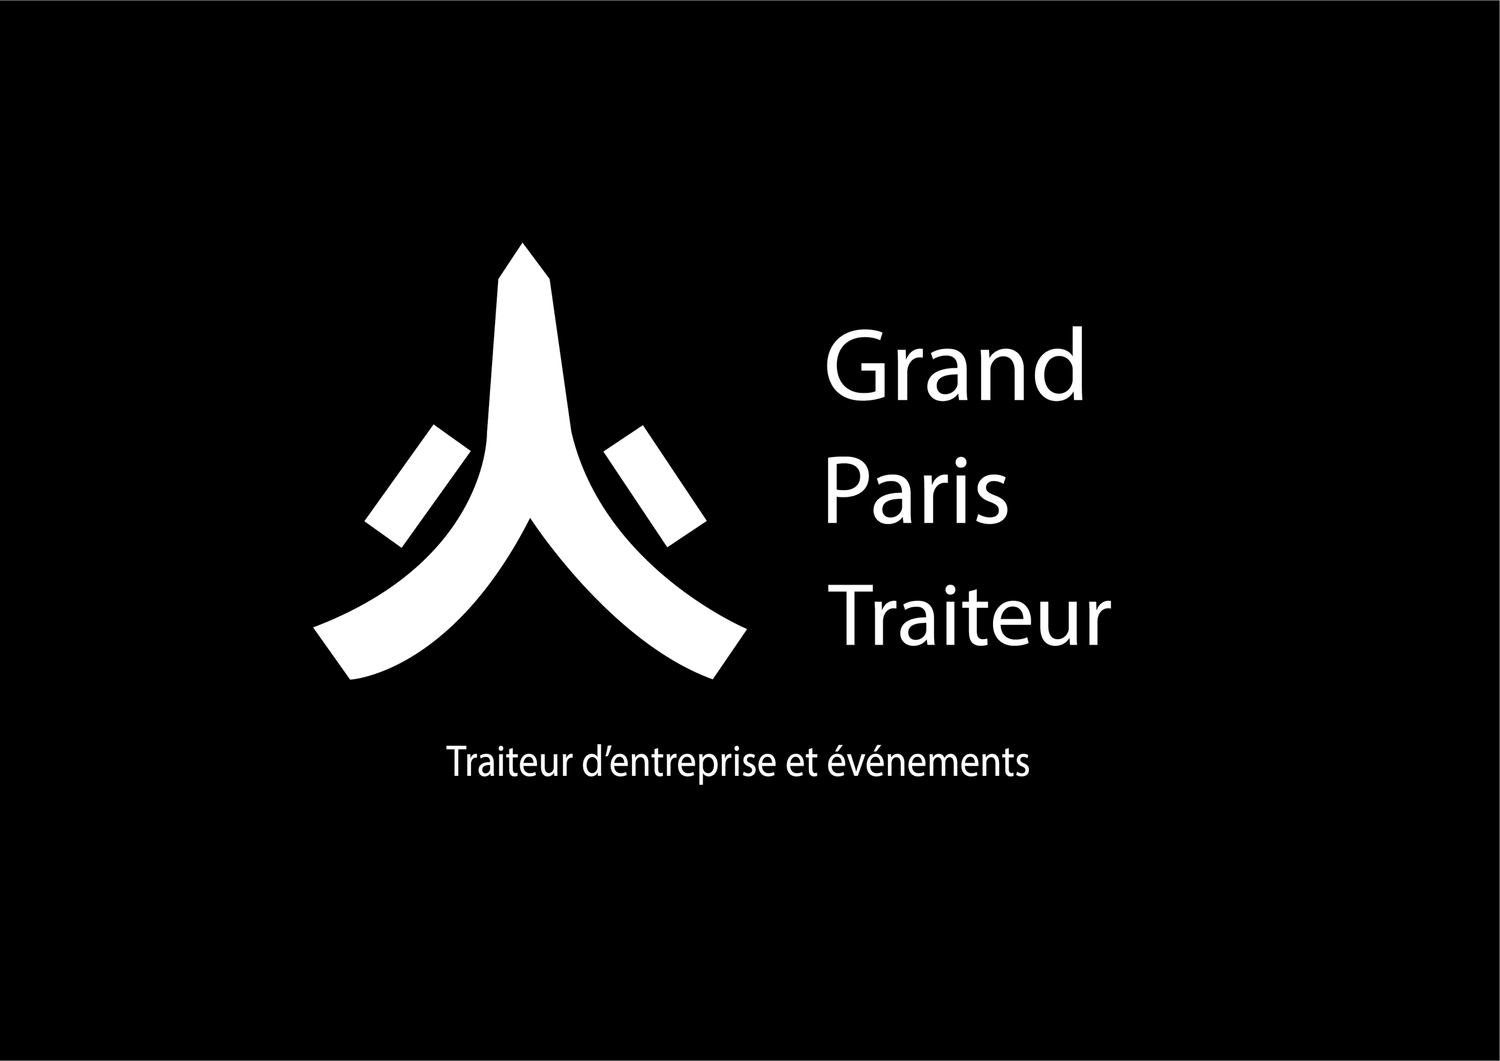 Grand Paris Traiteur